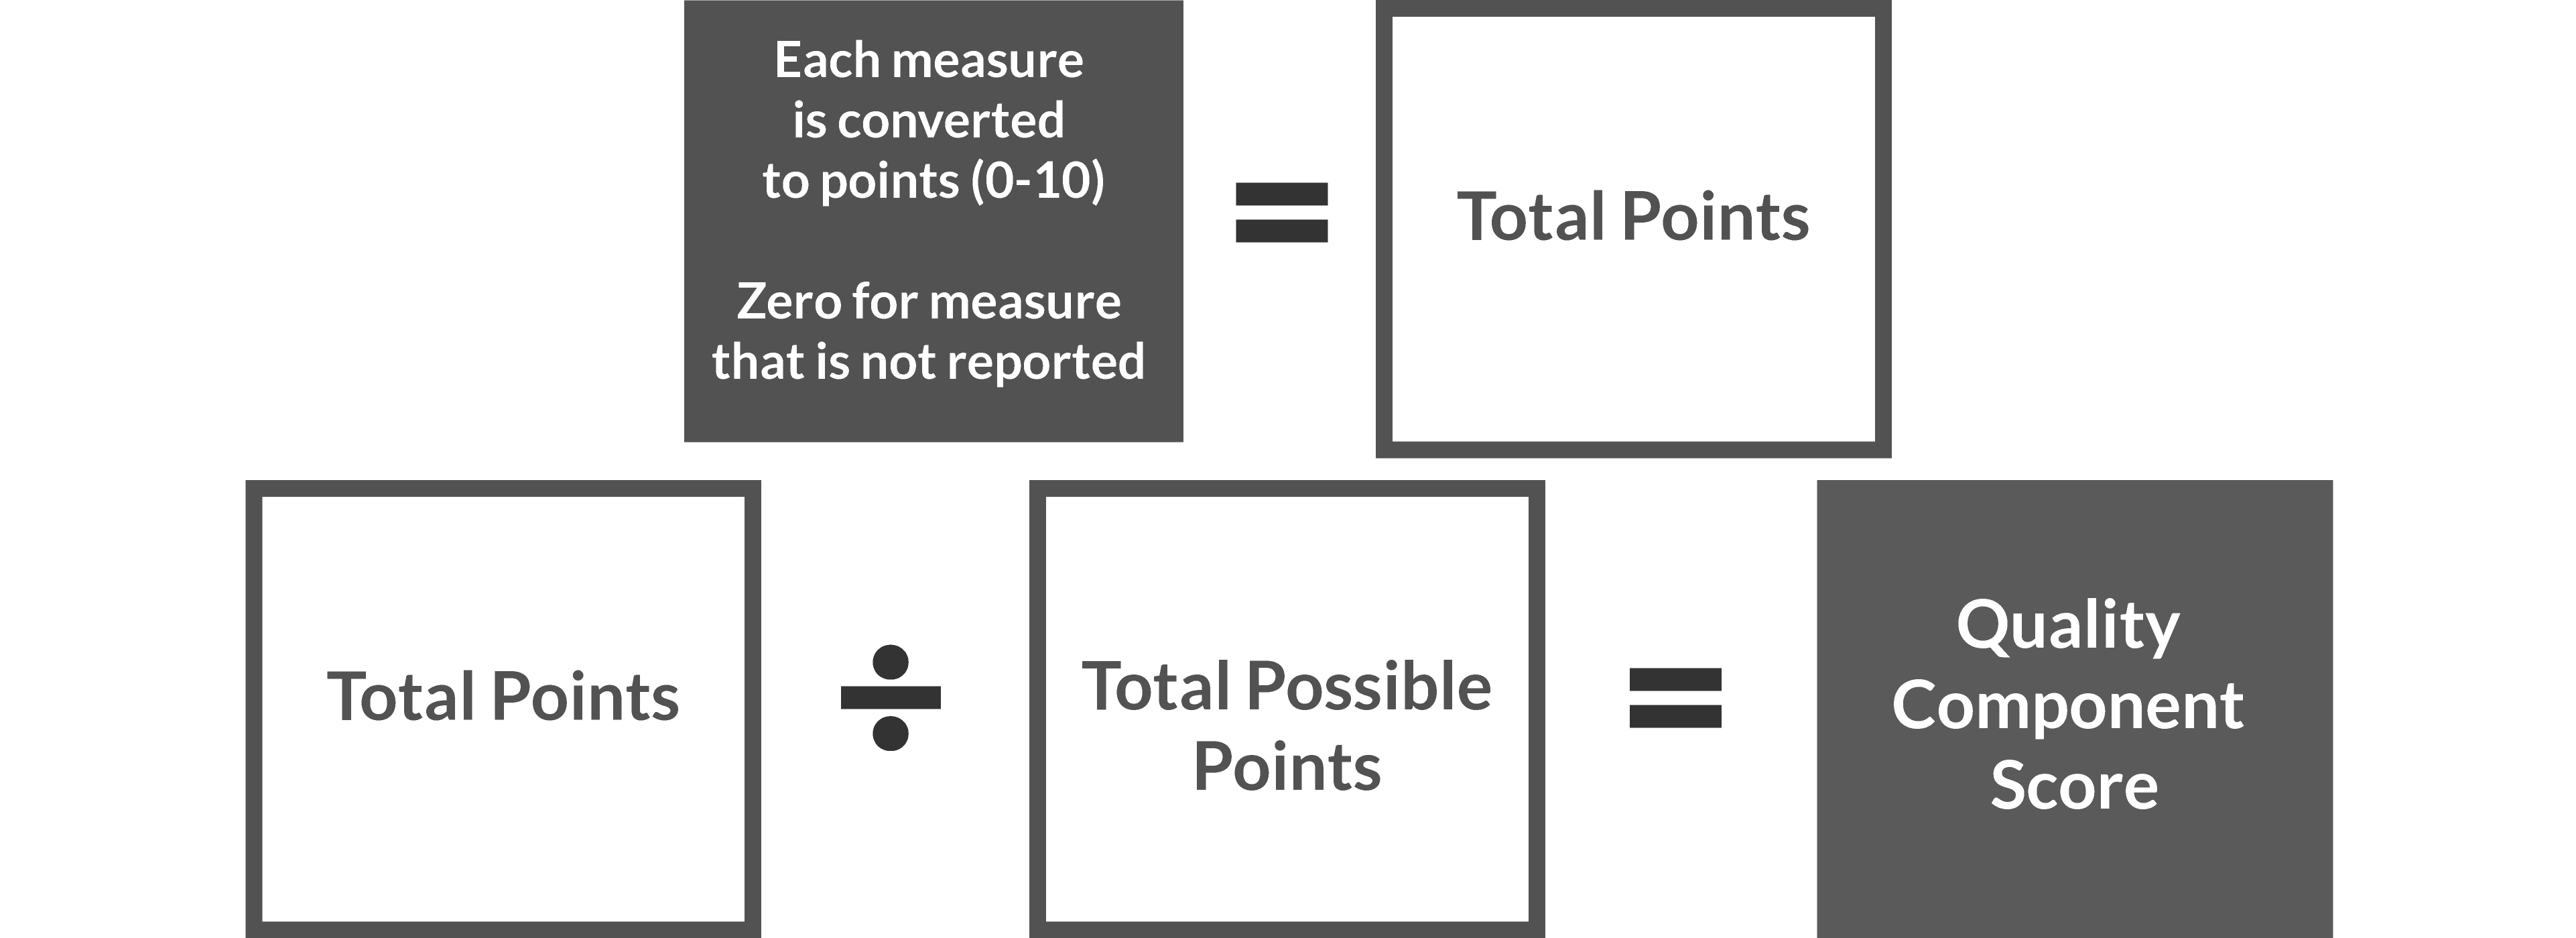 Measure Points + Bonus Points + Bonus for EHR Reporting = Total Points. Total Points / Total Possible Points = Quality Performance Category Score